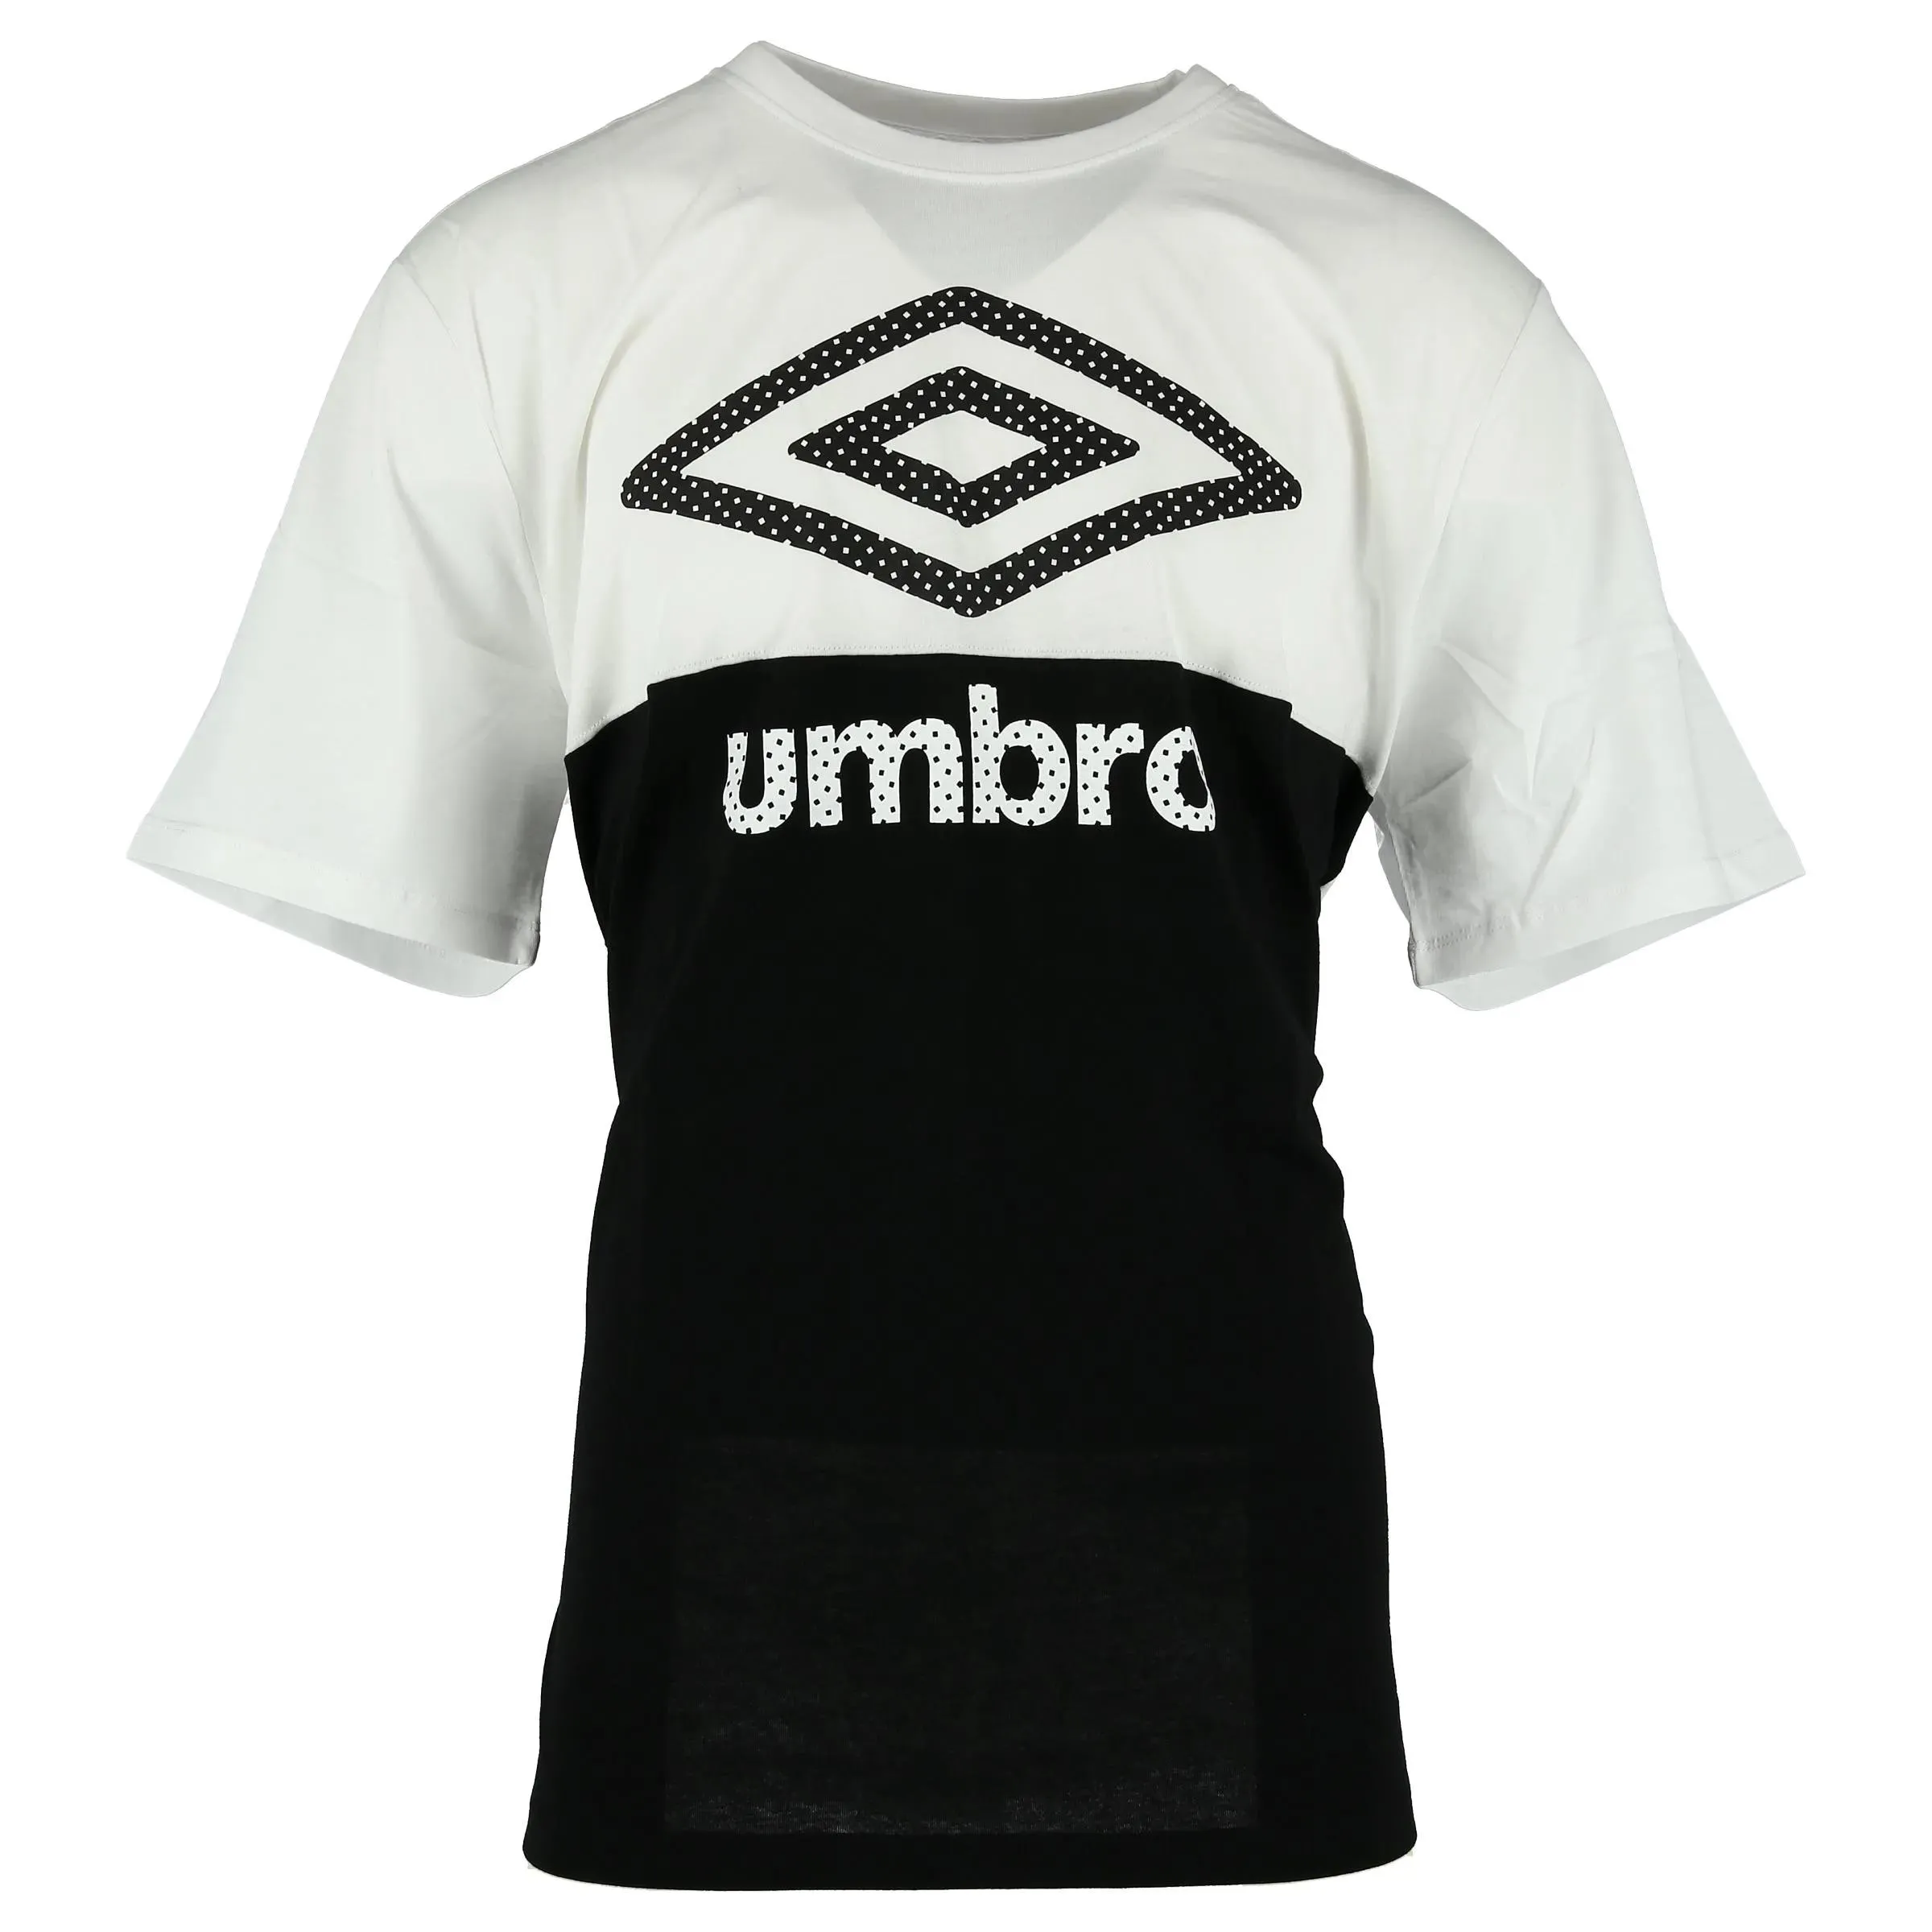 Umbro T-shirt UMBRO t-shirt Lind 